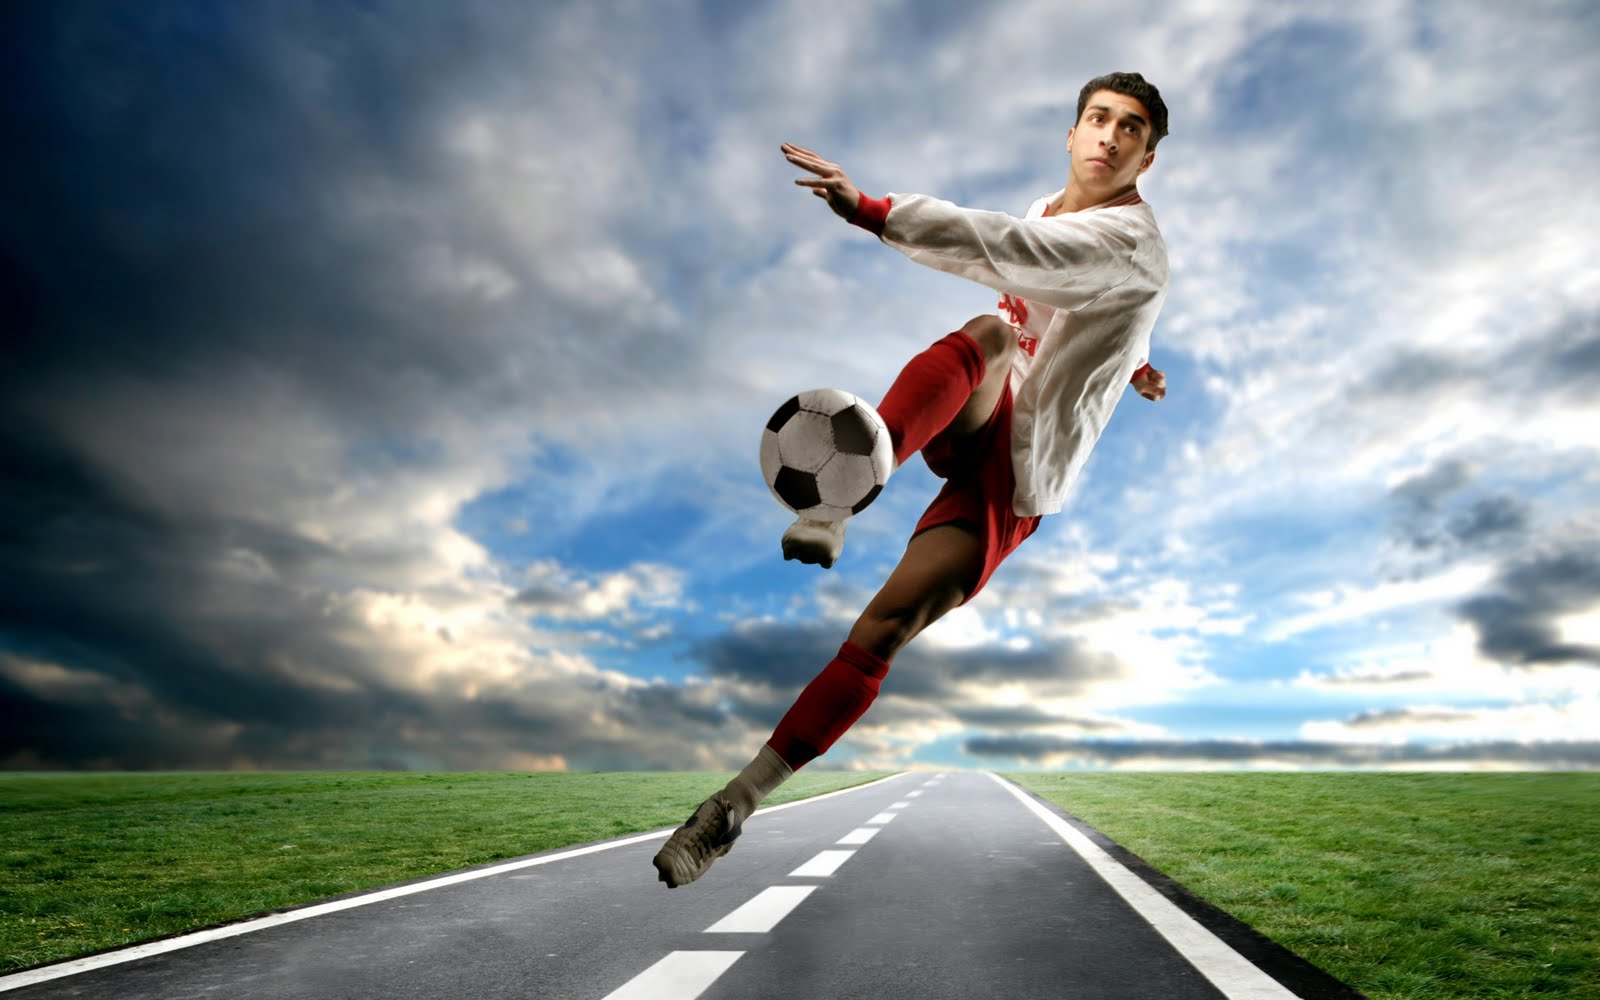 Free Image Bank: Vive la pasión del fútbol soccer (7 wallpapers grandes)